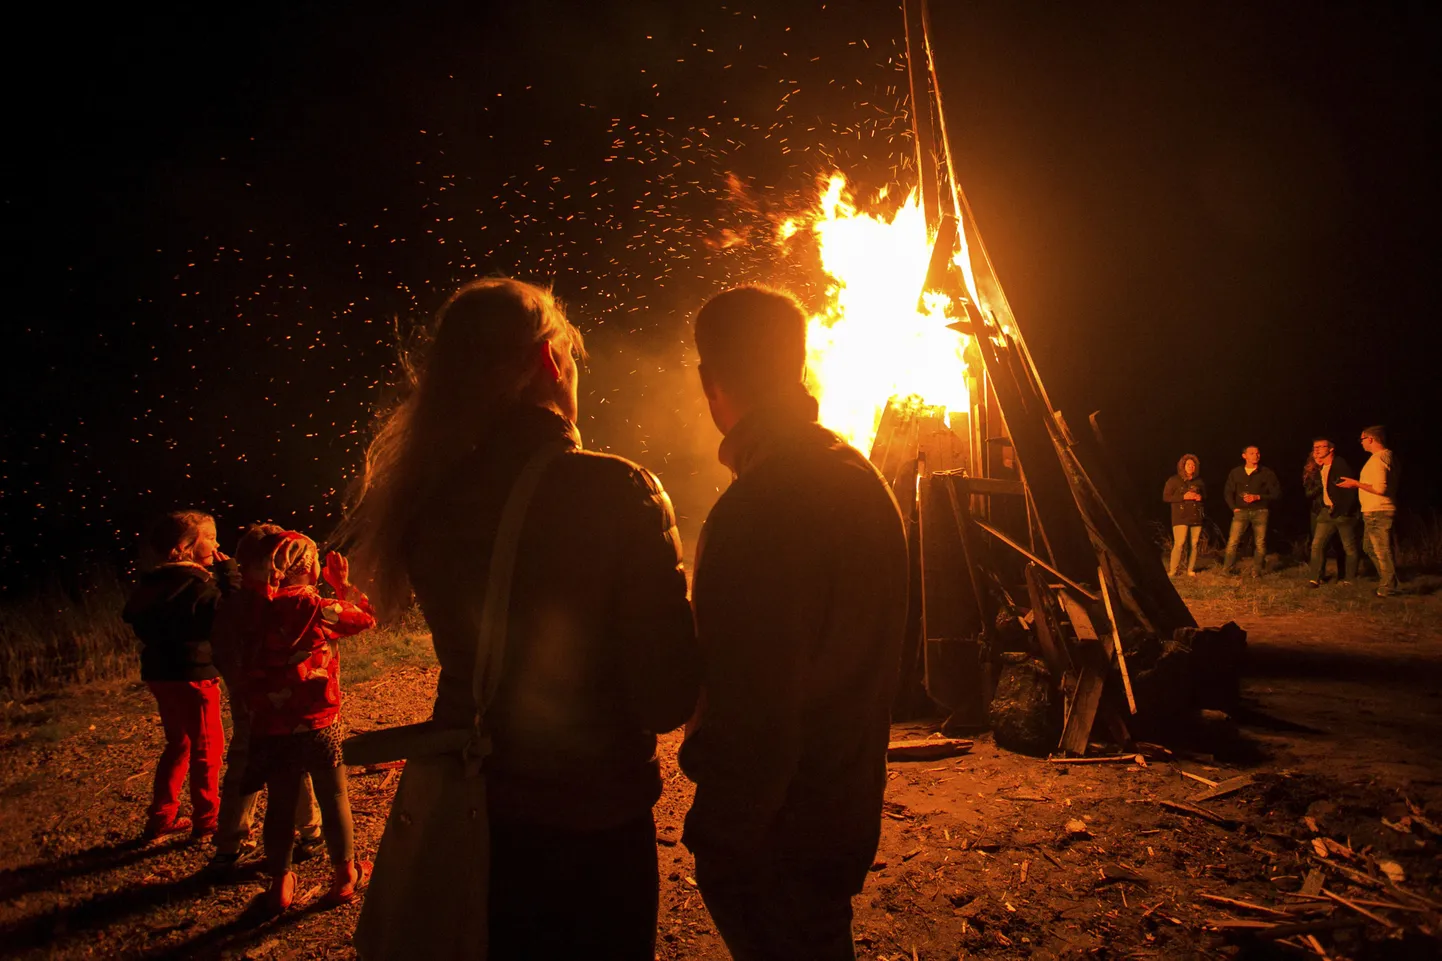 Muinastulede ööl on kõige tähtsam lõkketule valgel sõpradega koos olemine.